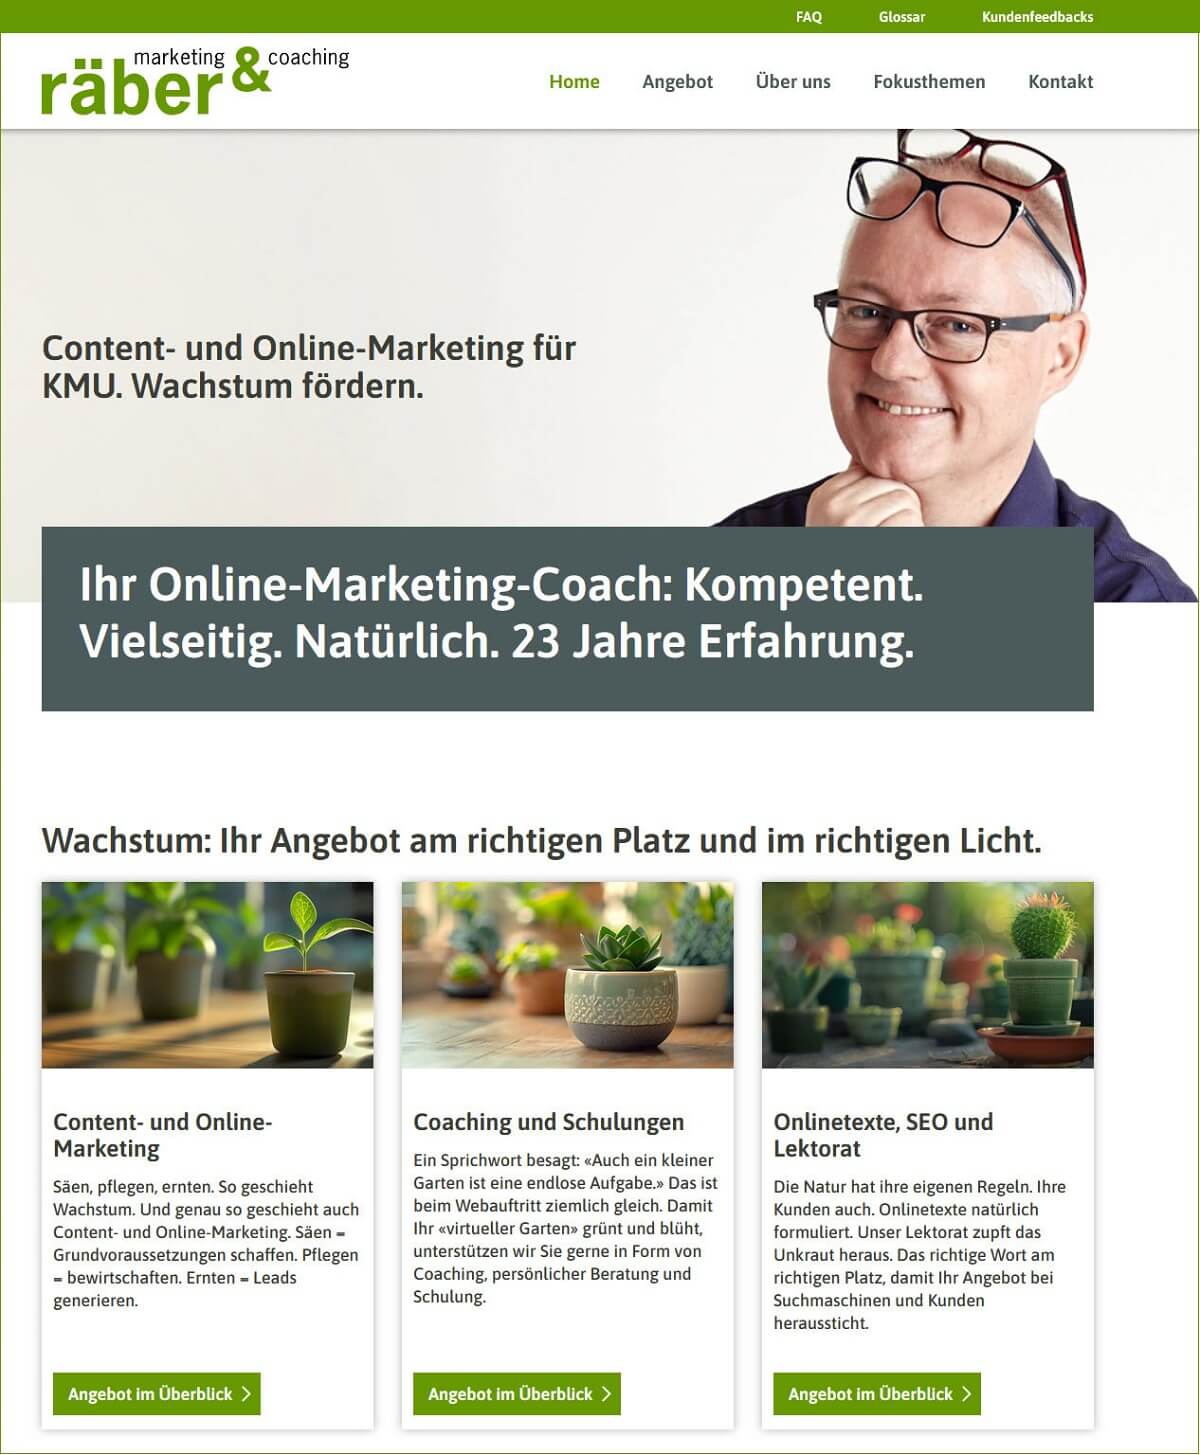 Content- und Online-Marketing für KMU in der Deutschschweiz